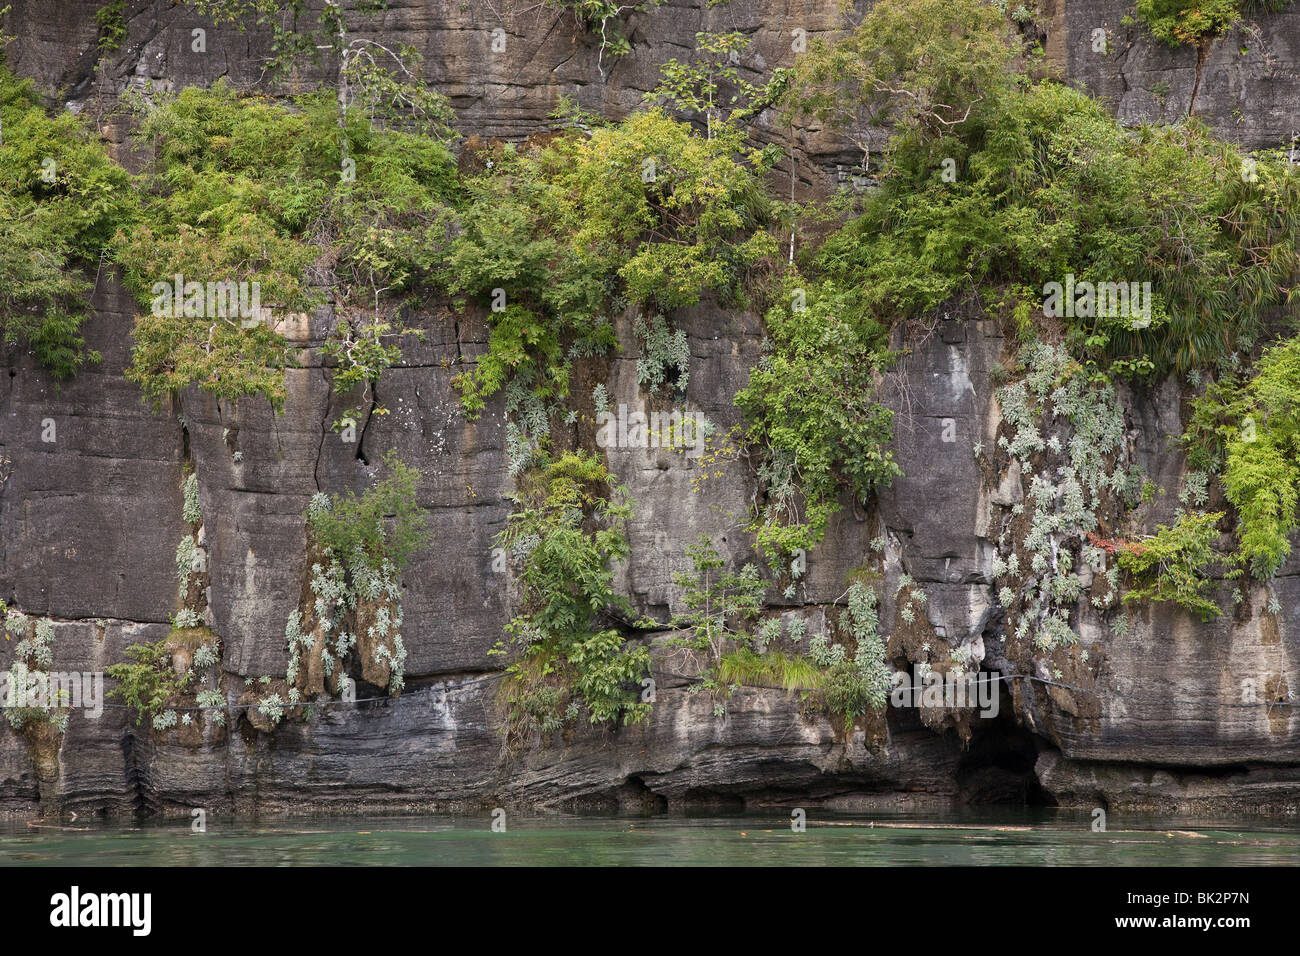 En Pulau Langkawi Geopark, costera características de piedra caliza con el crecimiento de arbustos. Foto de stock